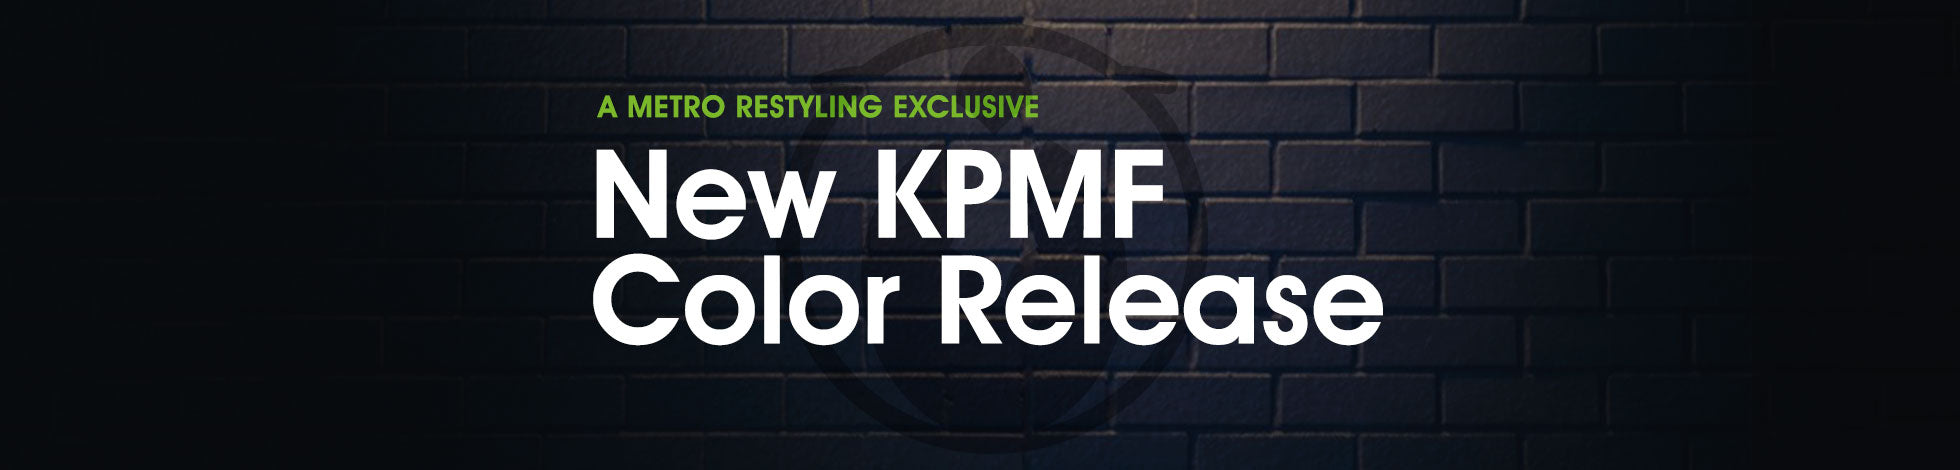 5 New KPMF Summer 2021 Colors